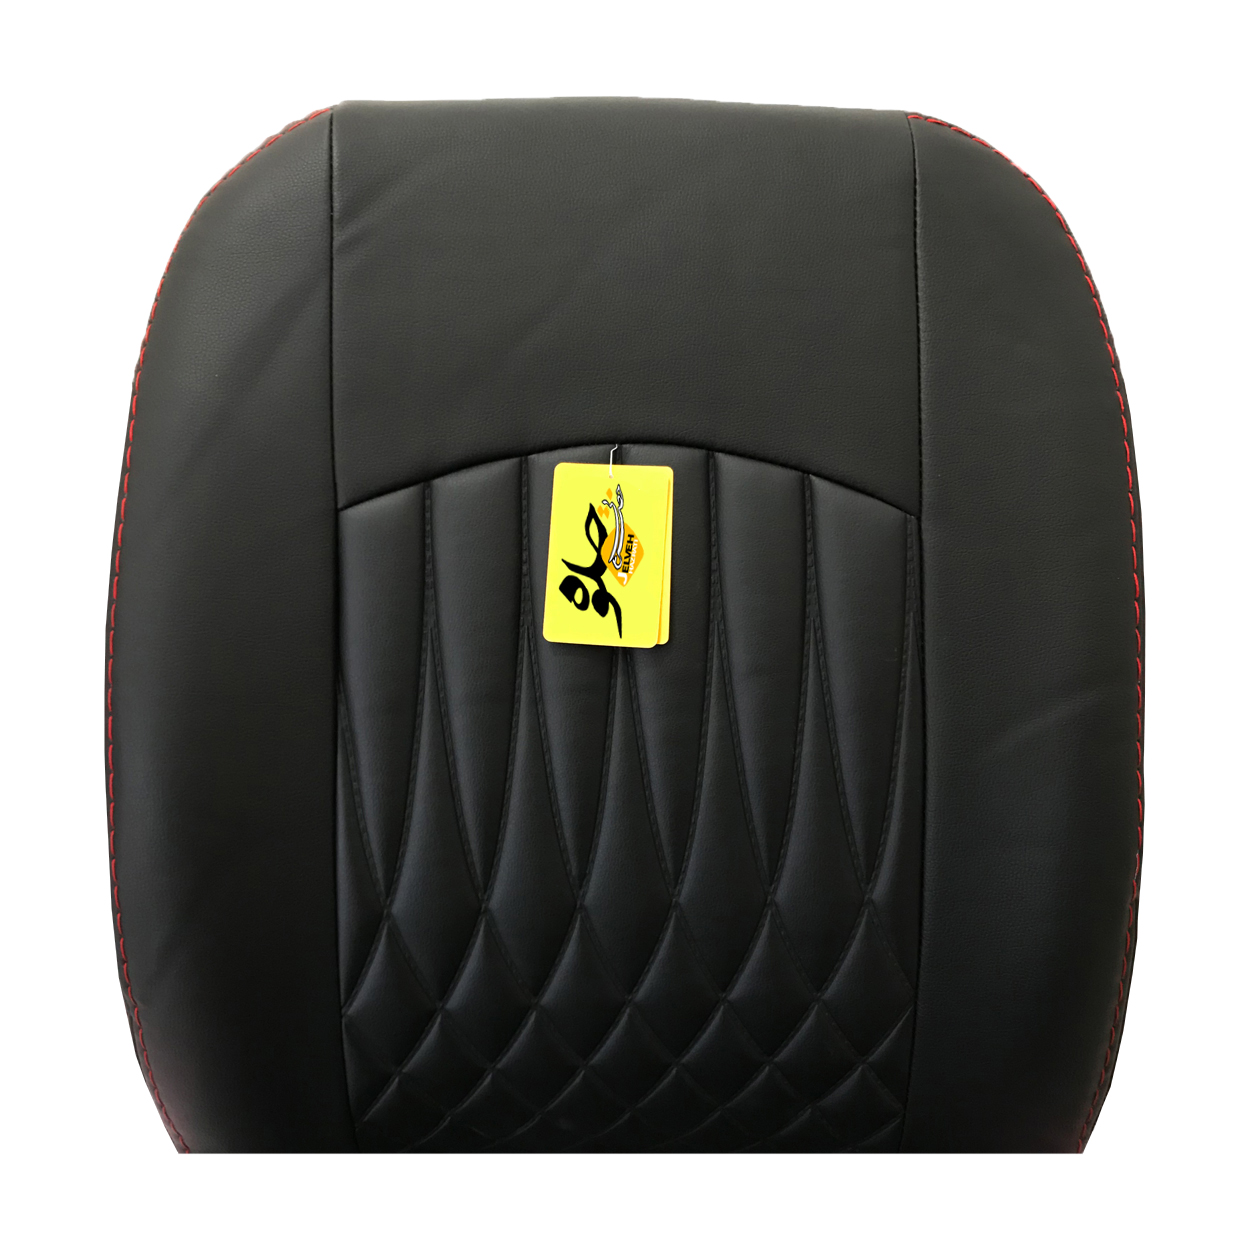 روکش صندلی خودرو جلوه مدل bg20612 مناسب برای رانا